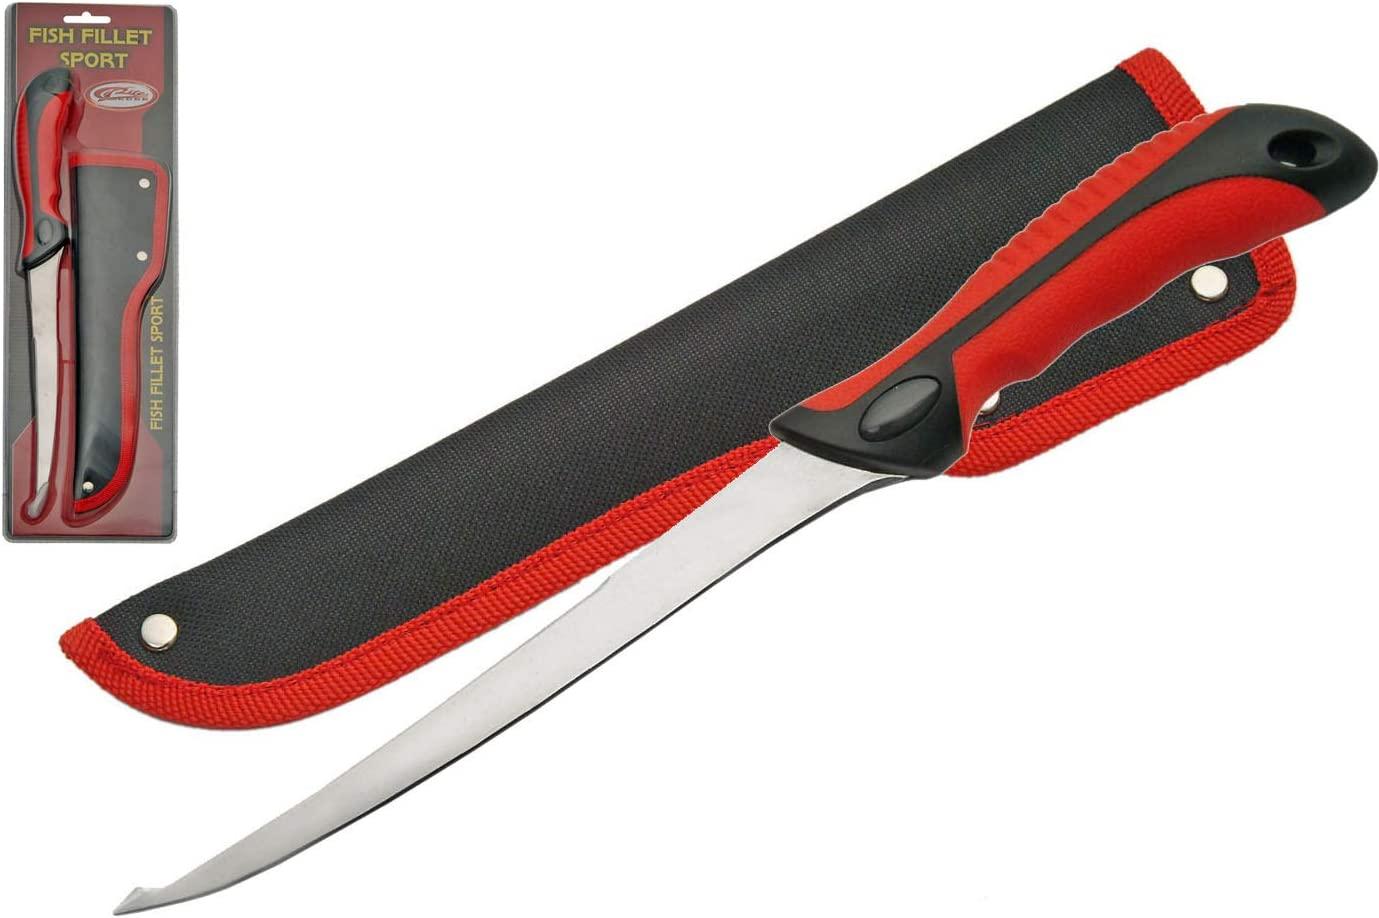 Red/Black Fillet Sport Knife